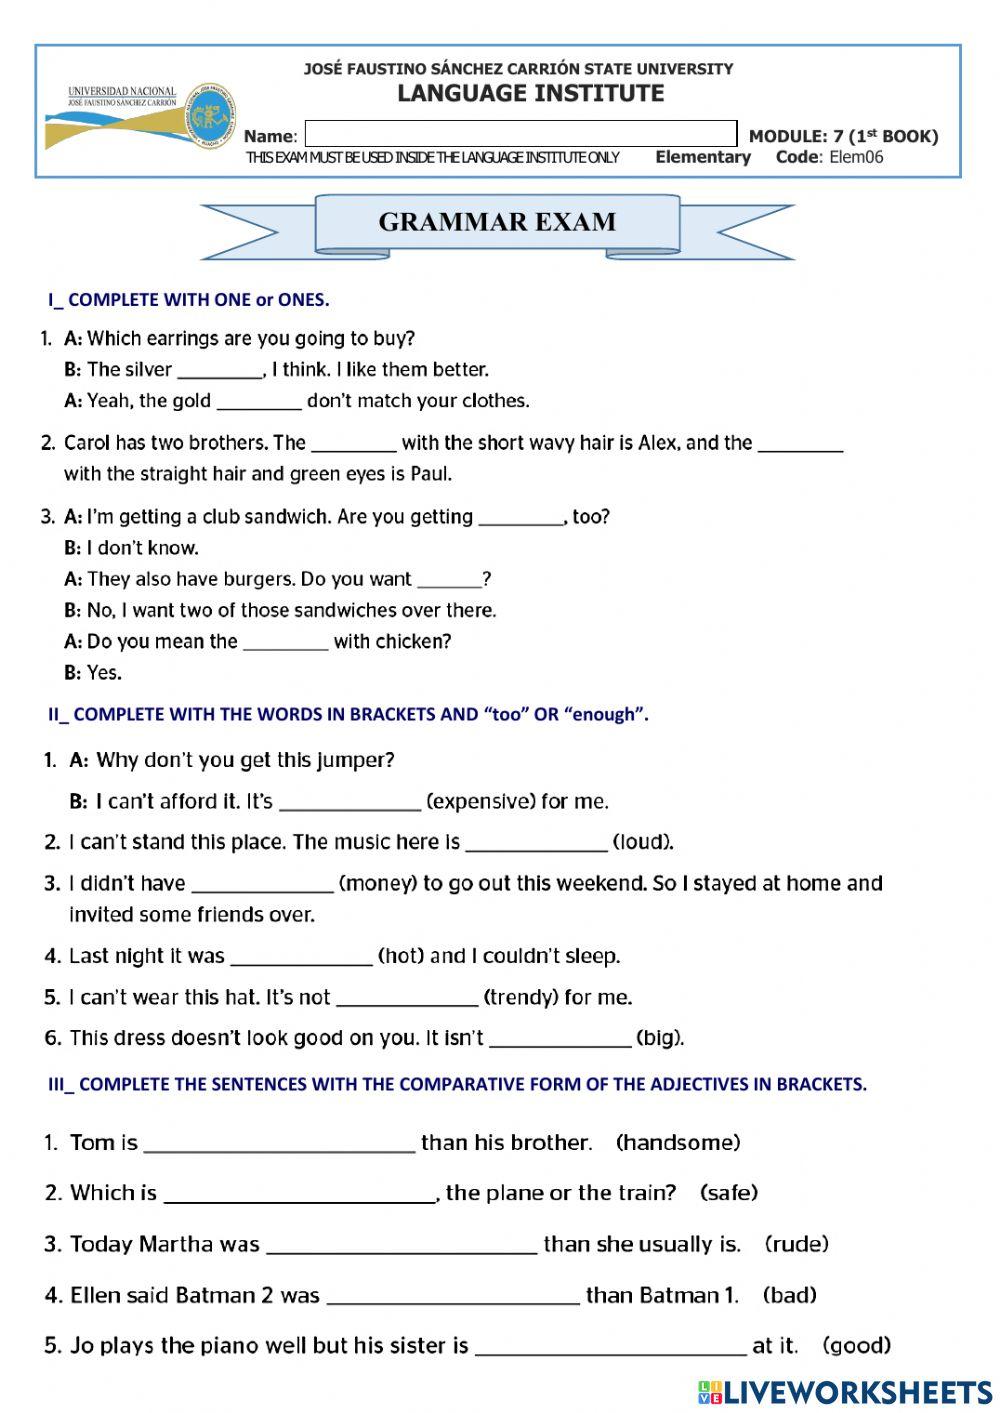 Elementary round up-grammar exam-module7-book1